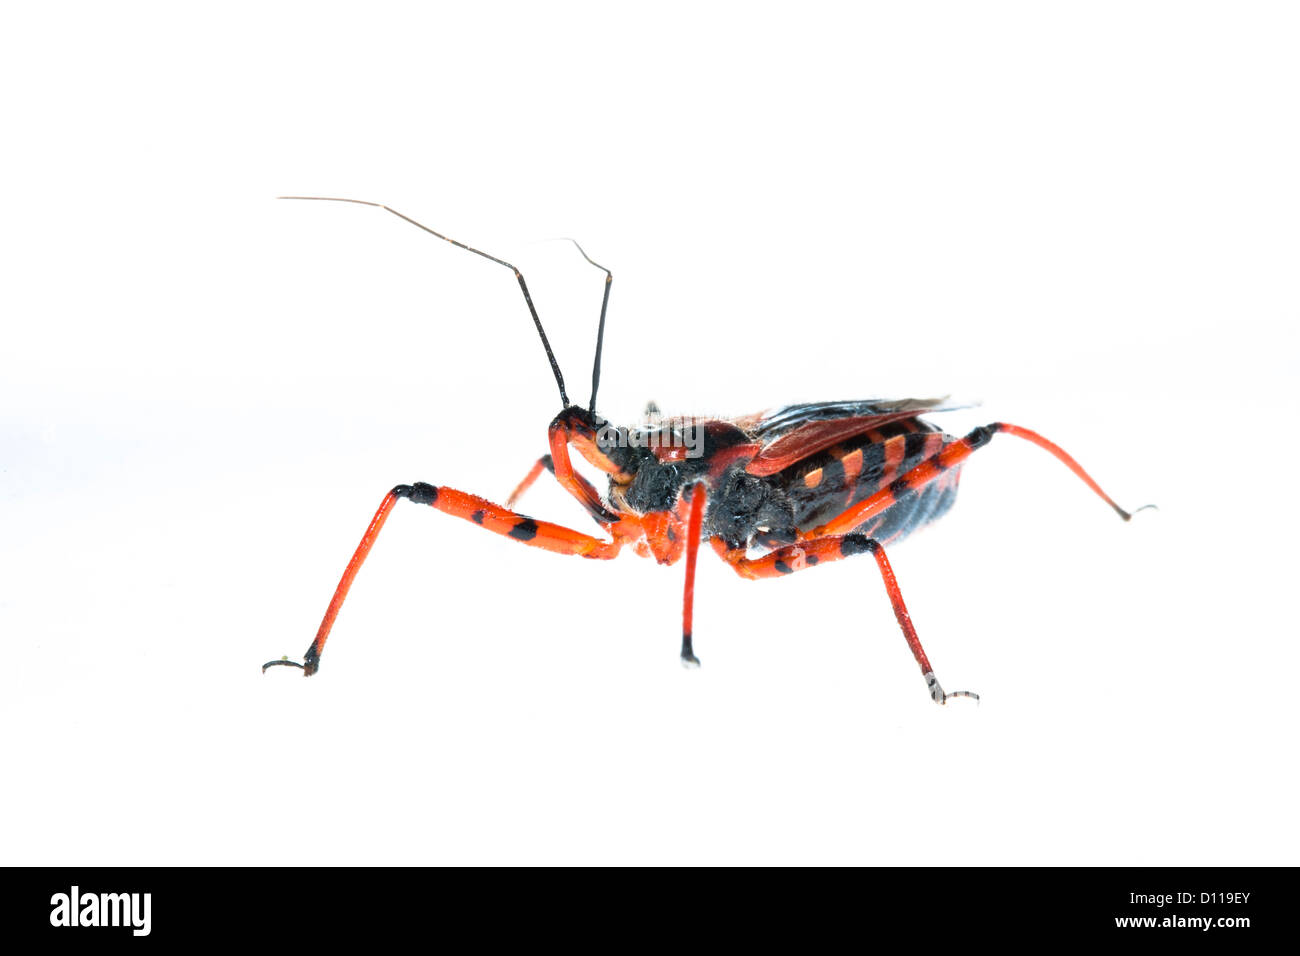 Red Assassin Bug (Rhynocoris Iracundus). Leben Sie Insekt vor einem weißen Hintergrund auf ein tragbares Studio fotografiert. Frankreich. Juni Stockfoto